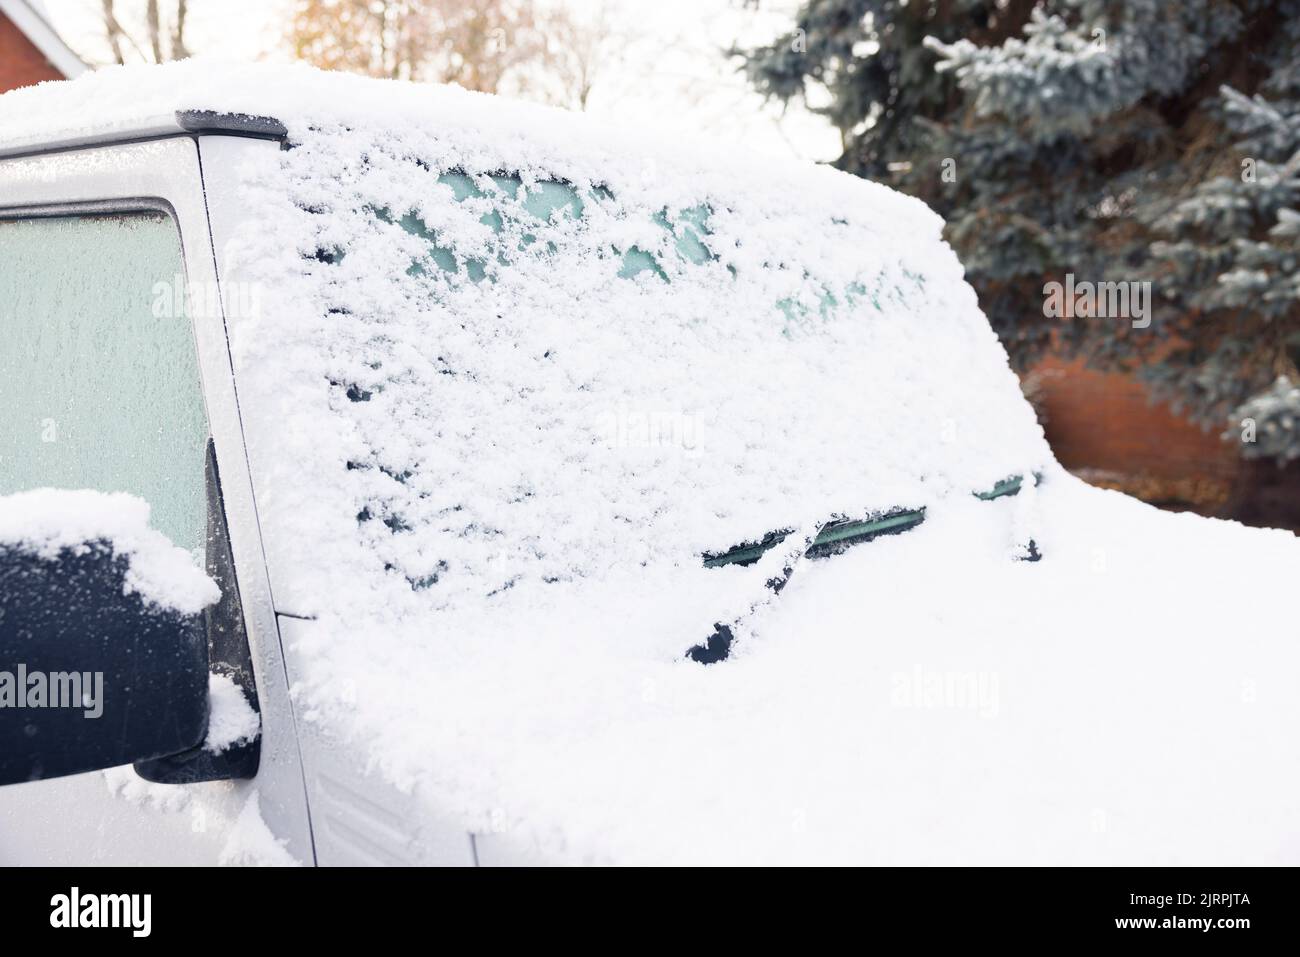 Nieve y hielo cubriendo el parabrisas o el parabrisas de un coche, estacionado en un camino de entrada fuera de una casa, Reino Unido Foto de stock